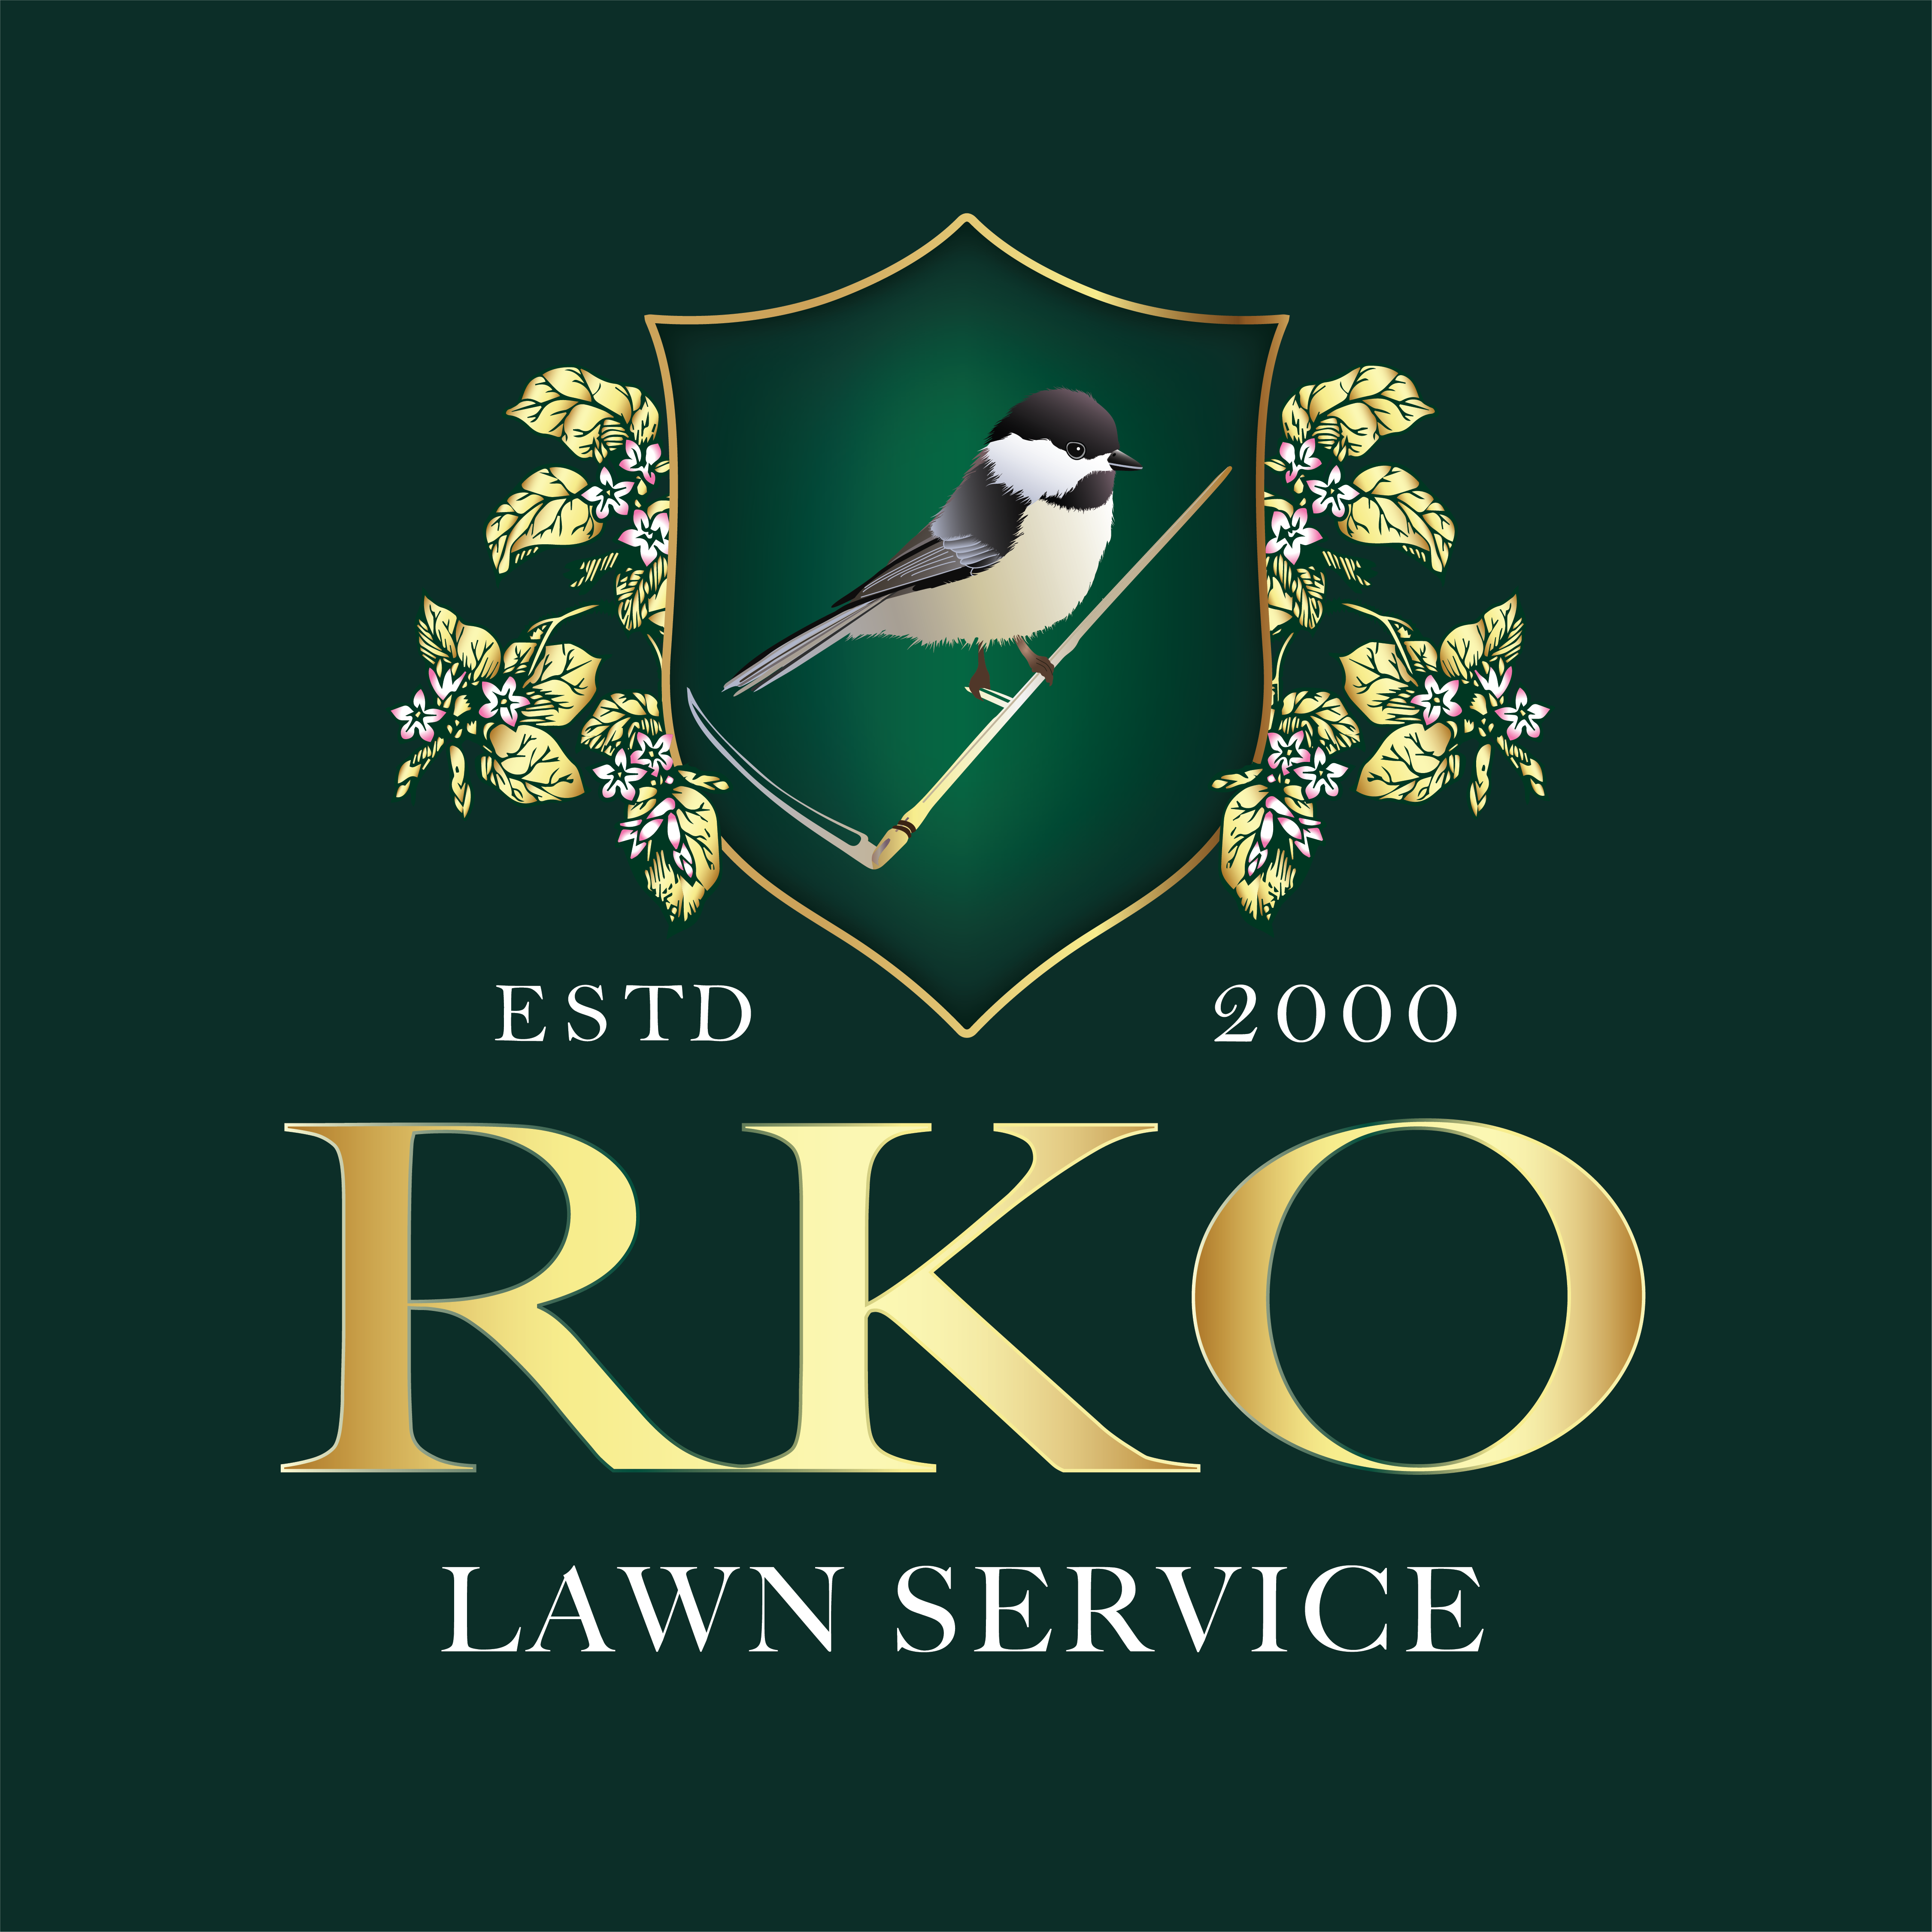 RKO Lawn Service - Home  Facebook Logo